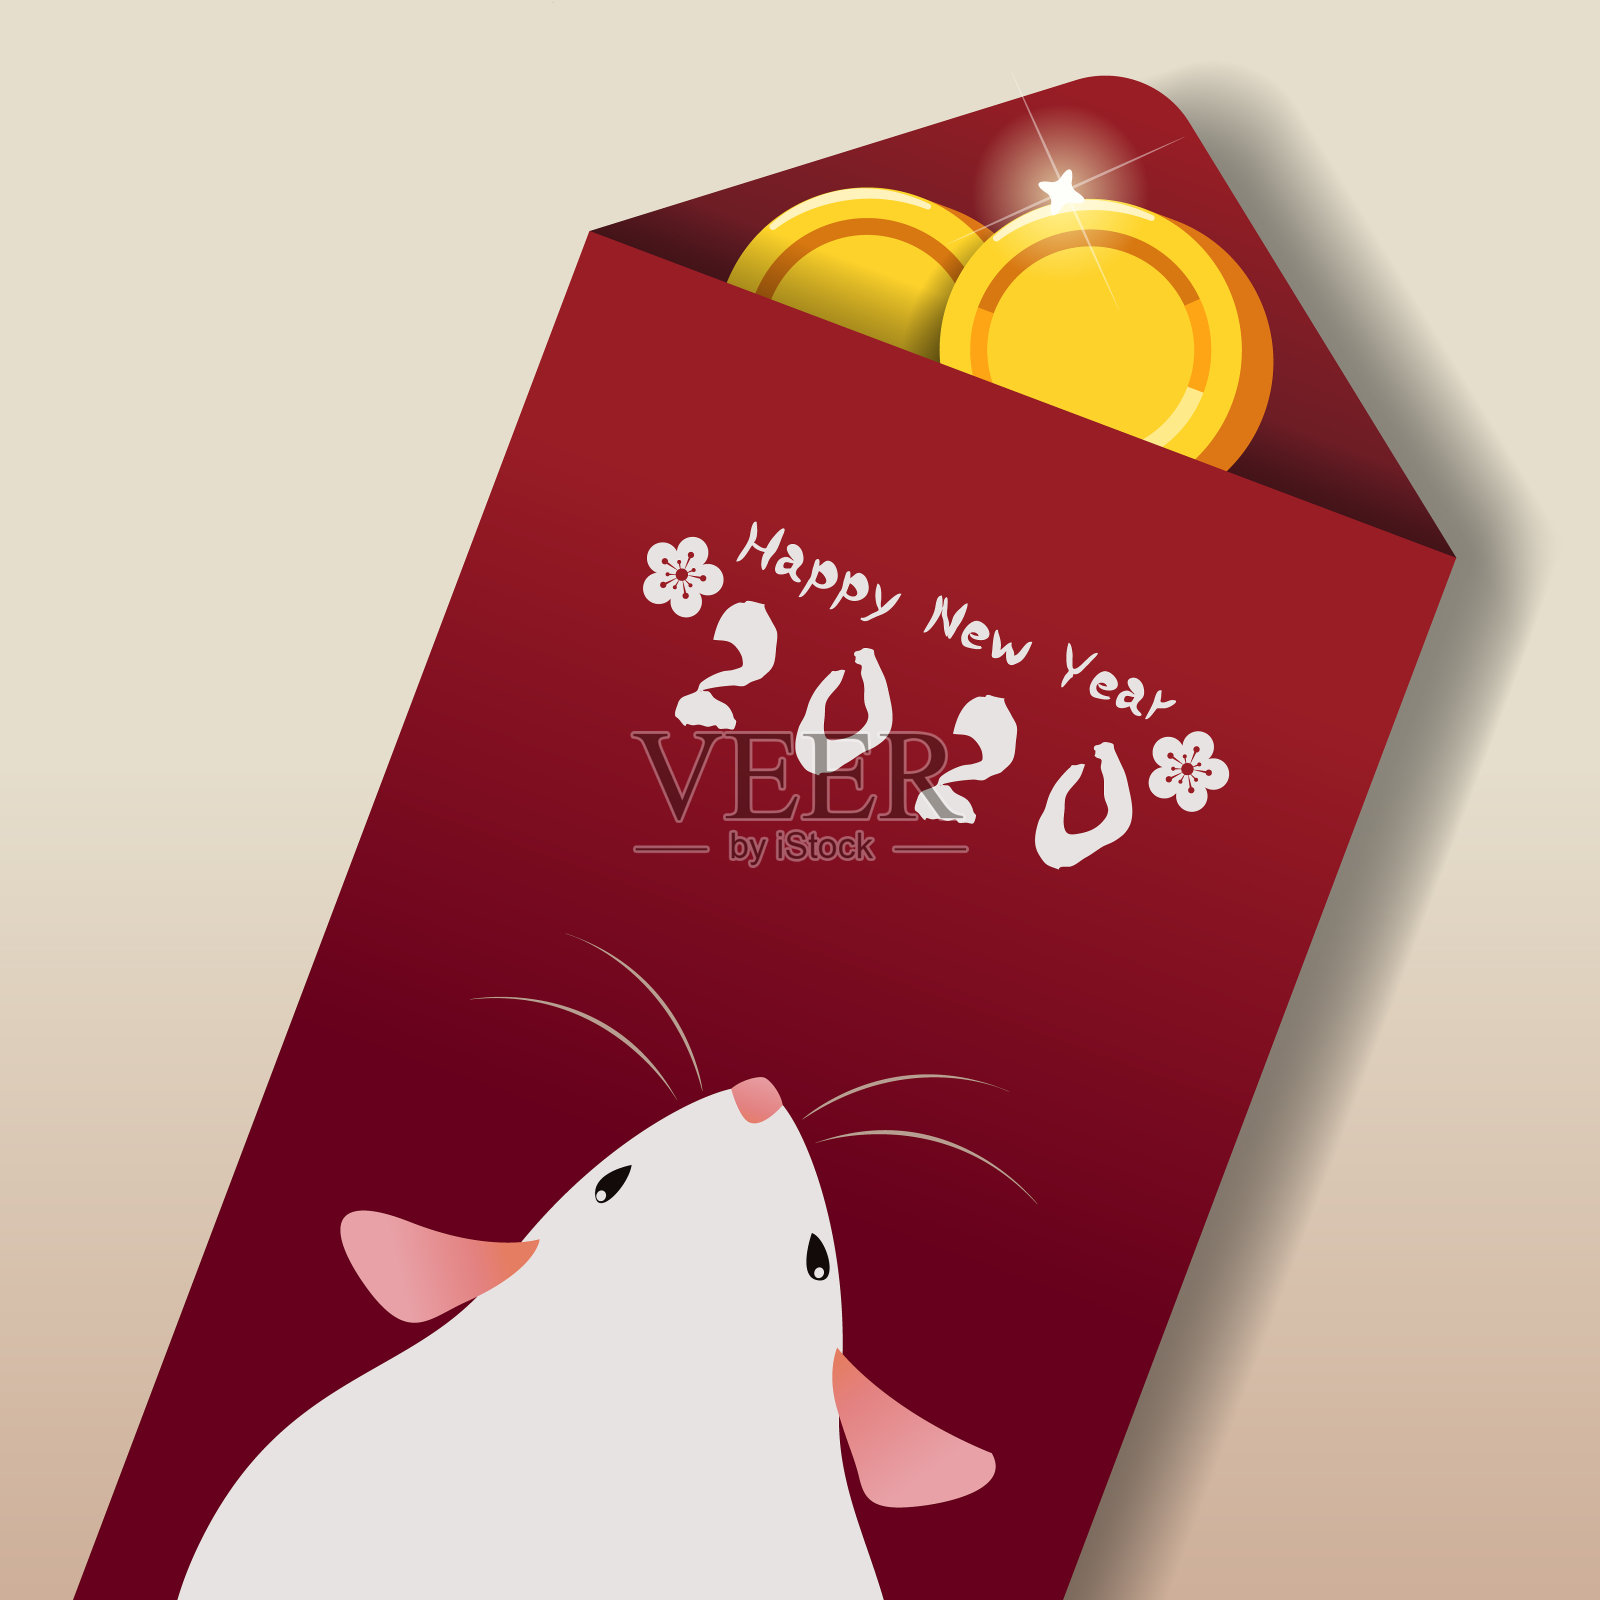 2020年鼠年春节快乐。插画图片素材